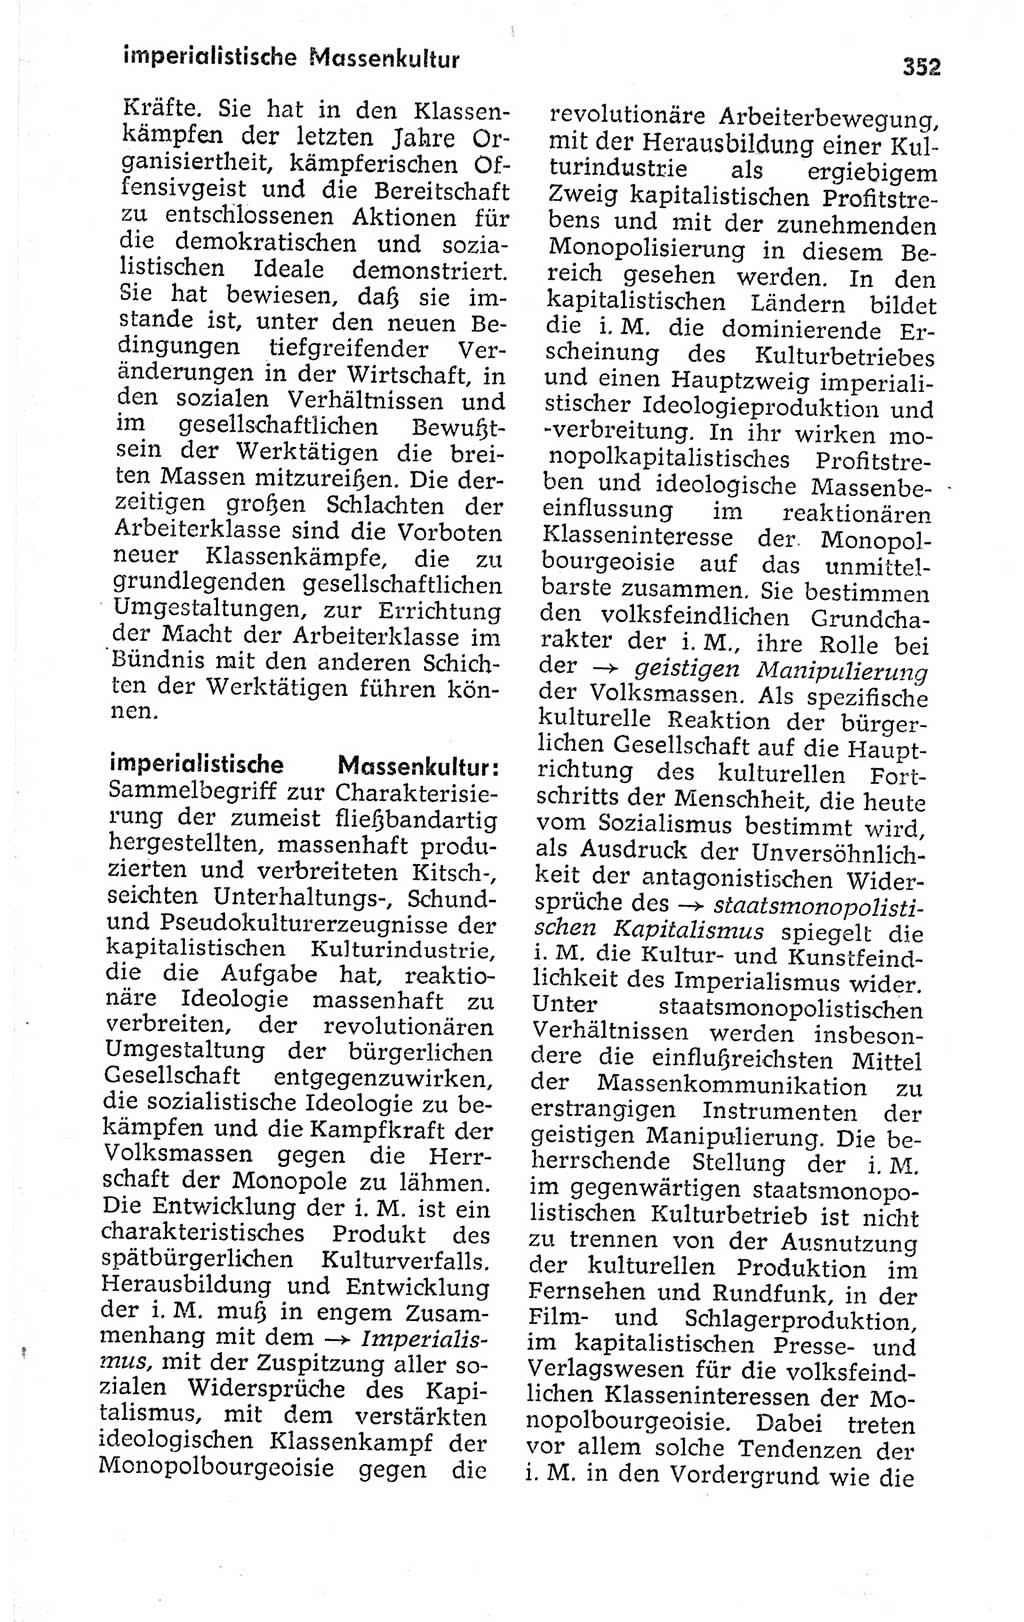 Kleines politisches Wörterbuch [Deutsche Demokratische Republik (DDR)] 1973, Seite 352 (Kl. pol. Wb. DDR 1973, S. 352)